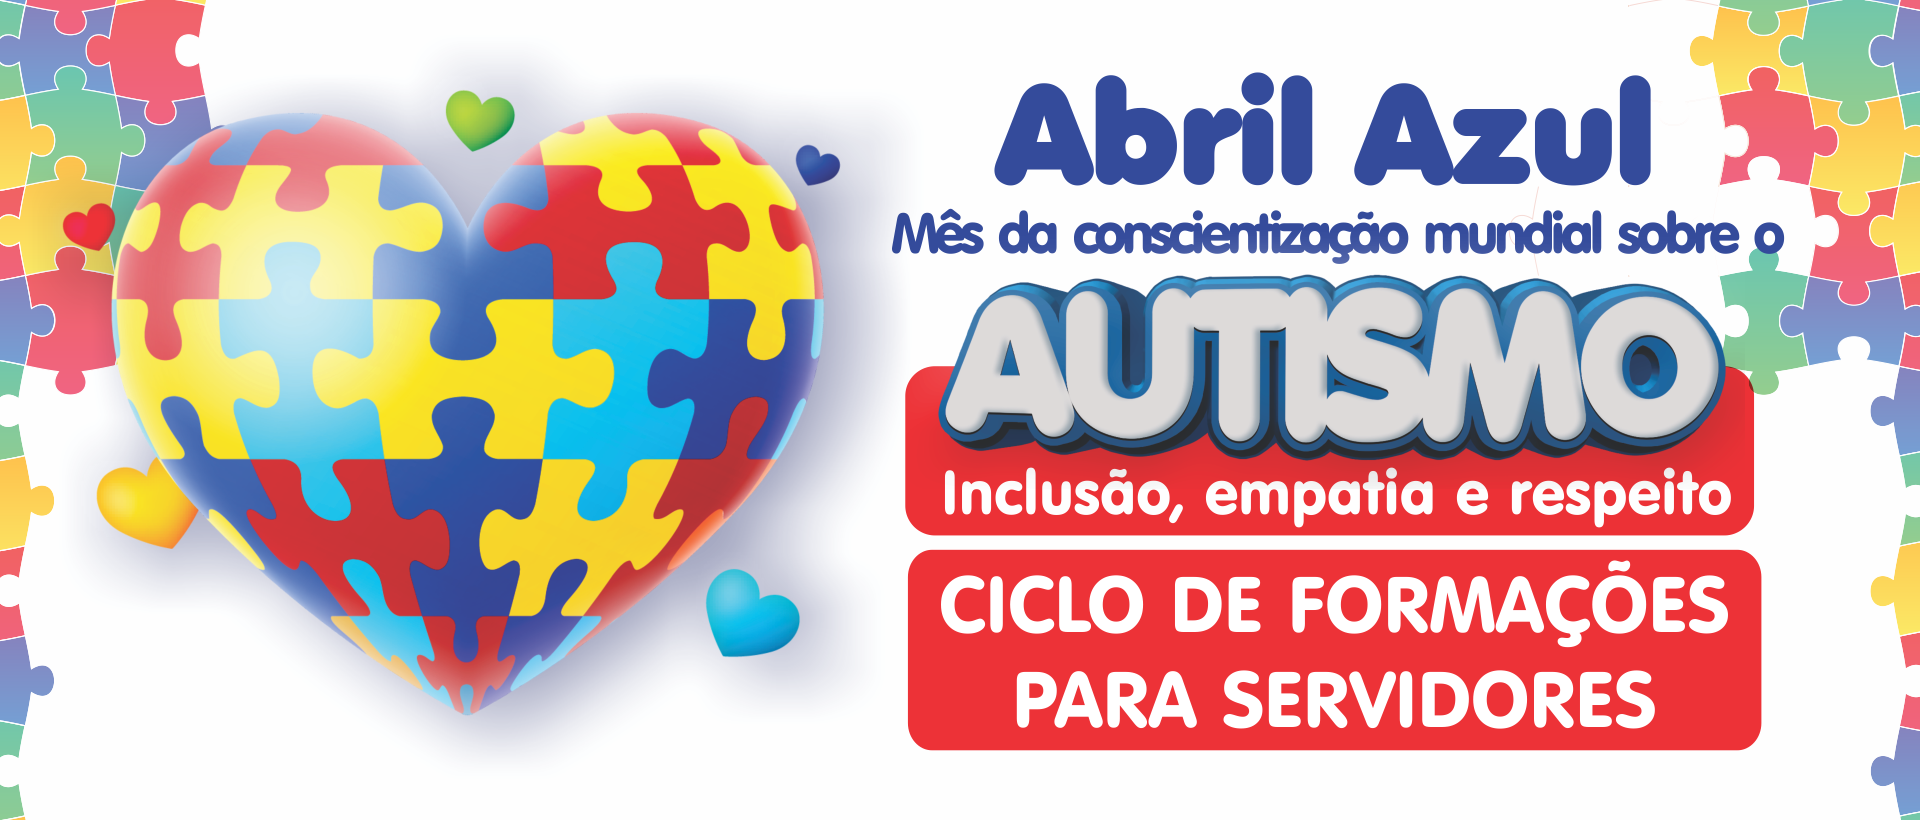 Abril Azul - Mês da Coscientização Mundial sobre o Autismo